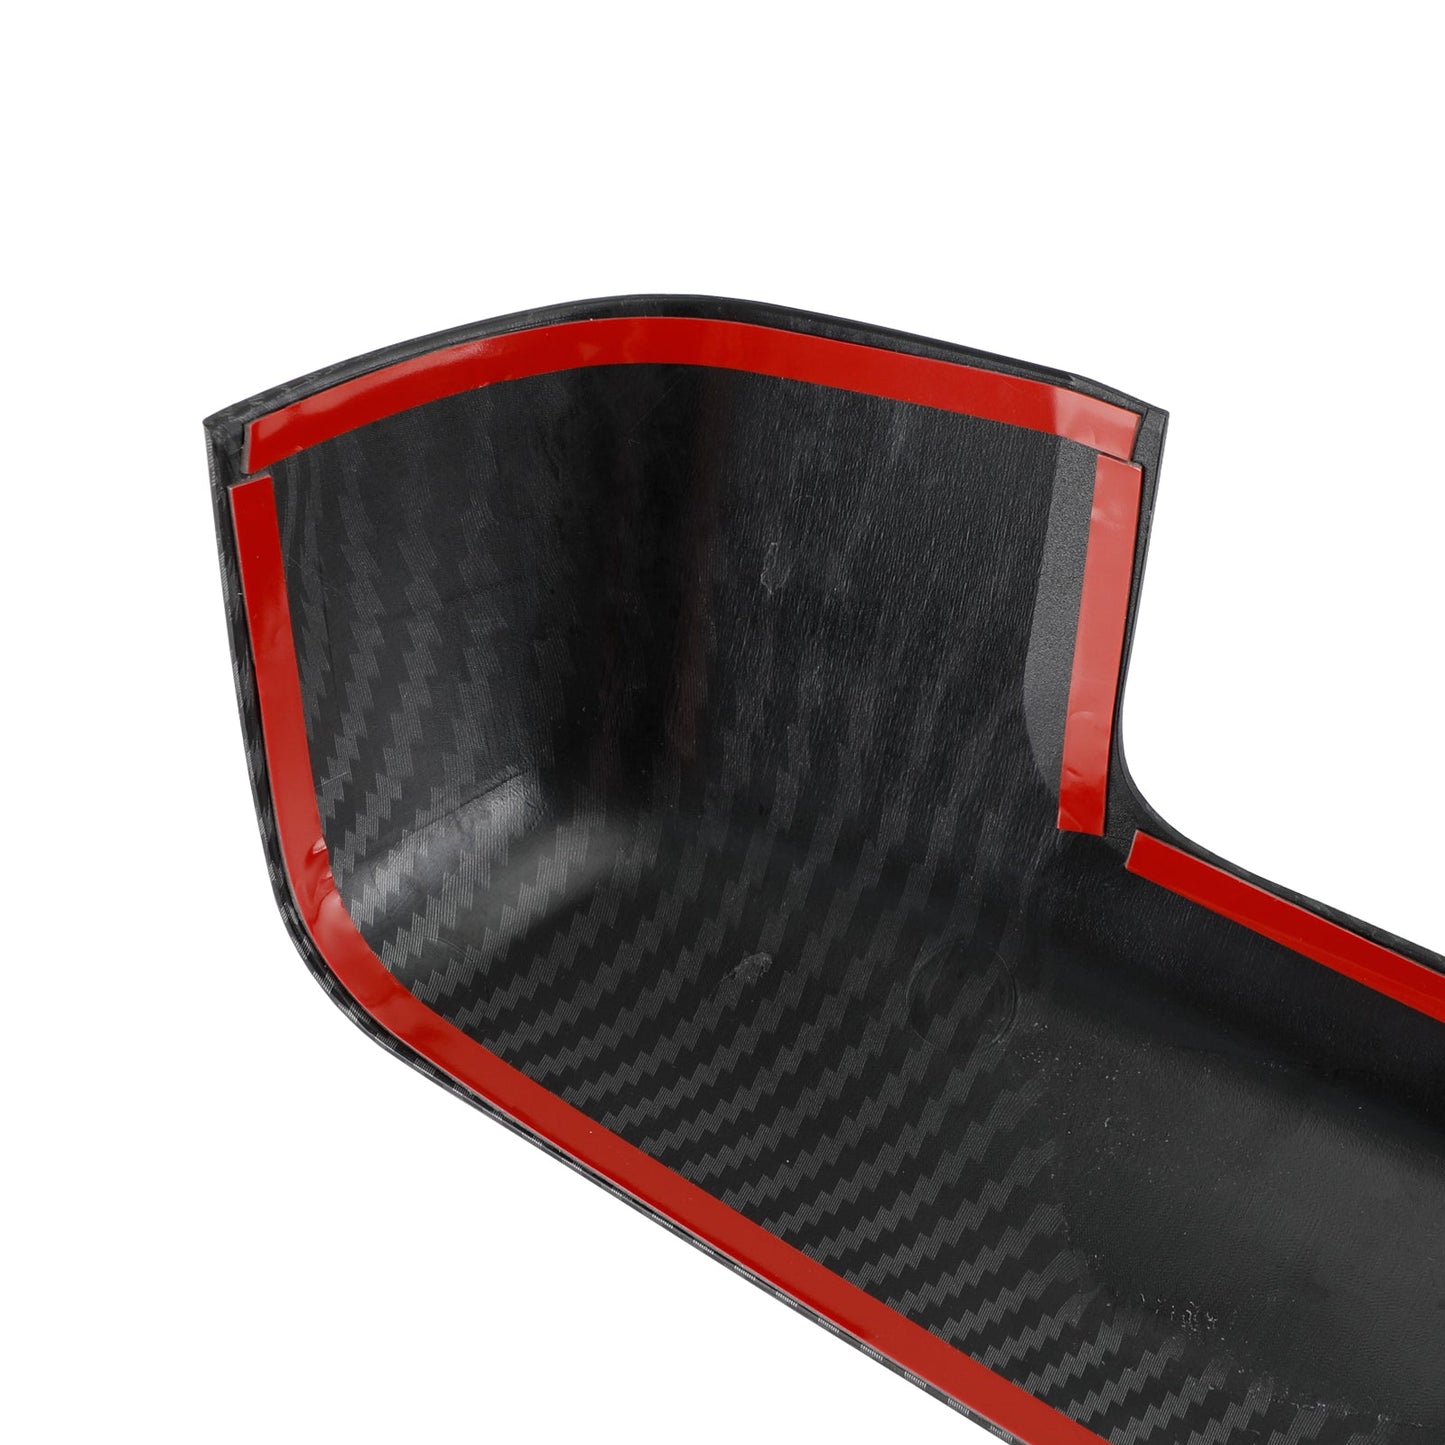 Accessoire de couvercle de capuchon de rétroviseur en fibre de carbone Chevrolet Silverado 1500 2019-22